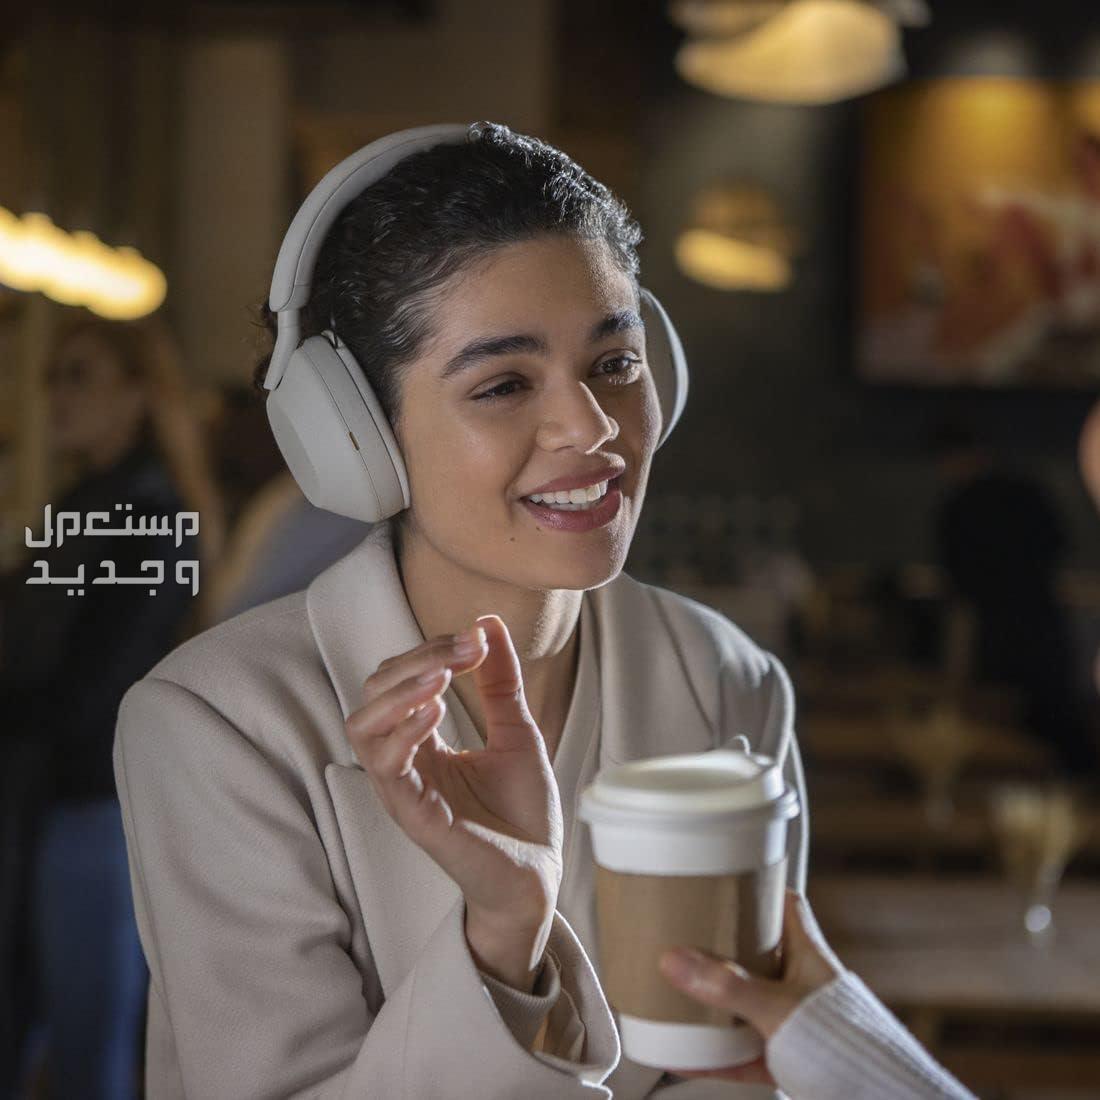 سماعة سوني 5 بتقنية إلغاء الضوضاء المطوّرة  السعر والمميزات الفائقة في عمان سماعة سوني 5 جودة مكالمات رائدة